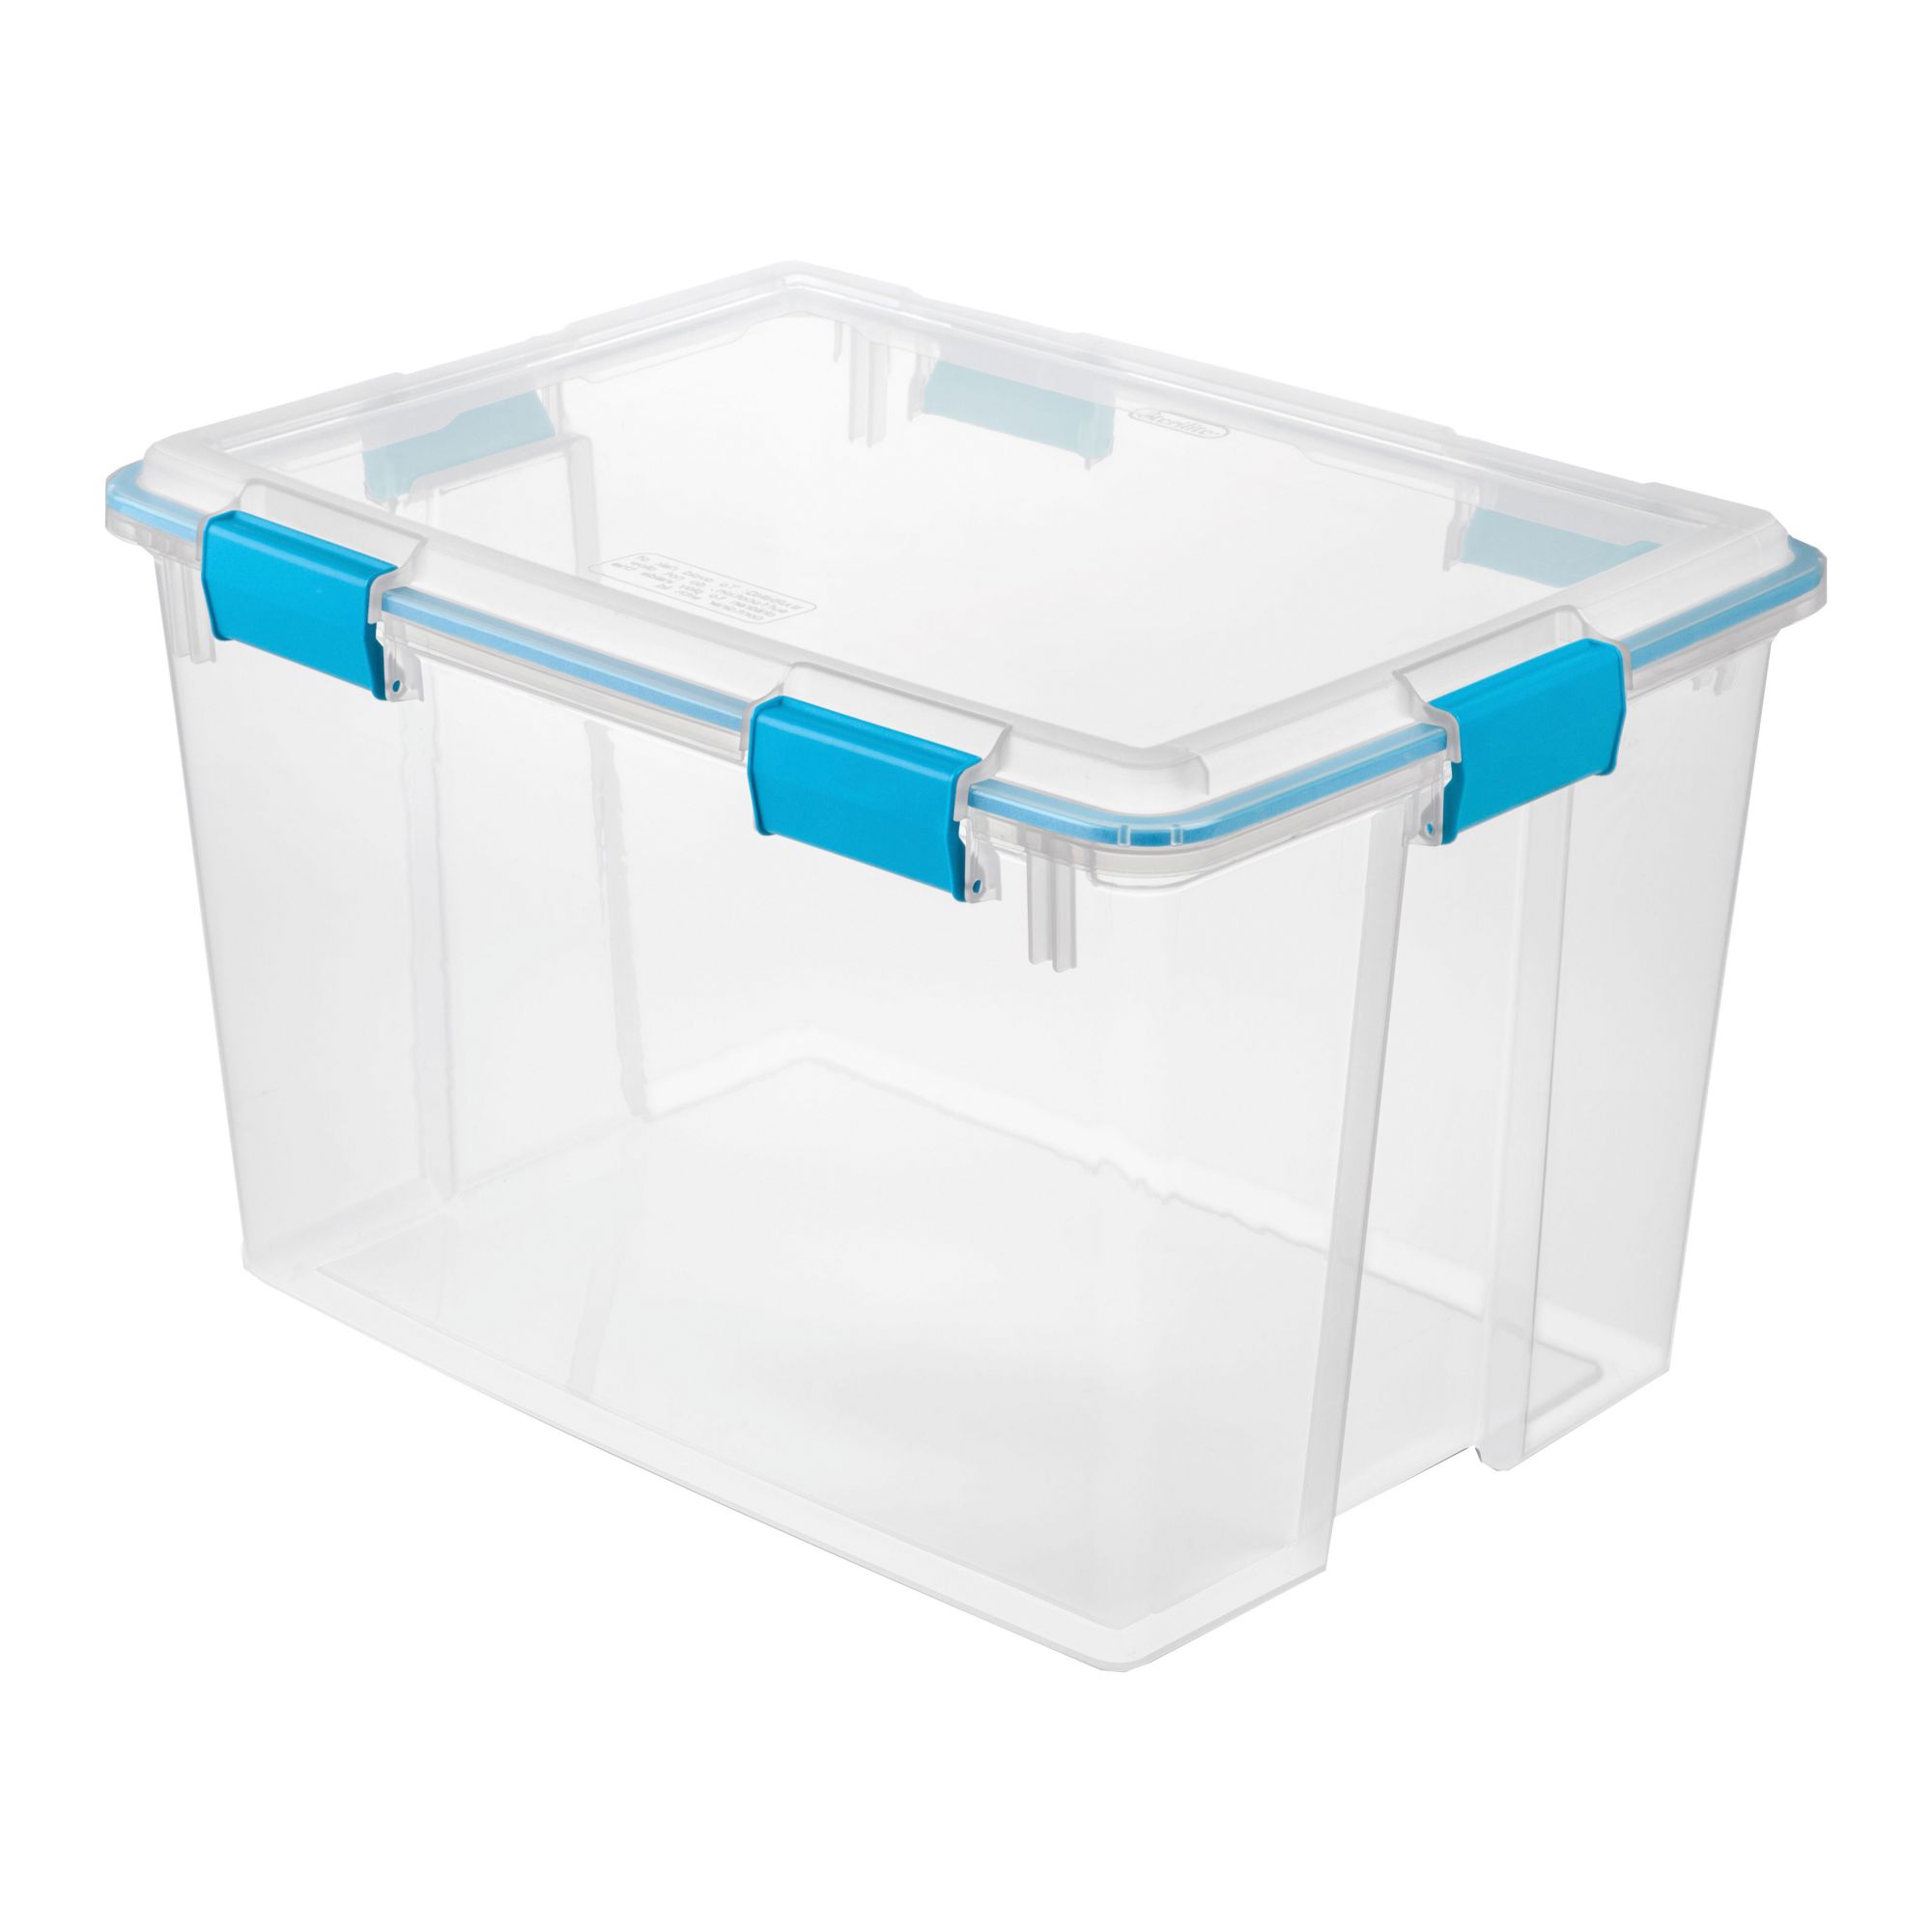  Ezy Storage IP67 Rated 50 Liter Waterproof Plastic